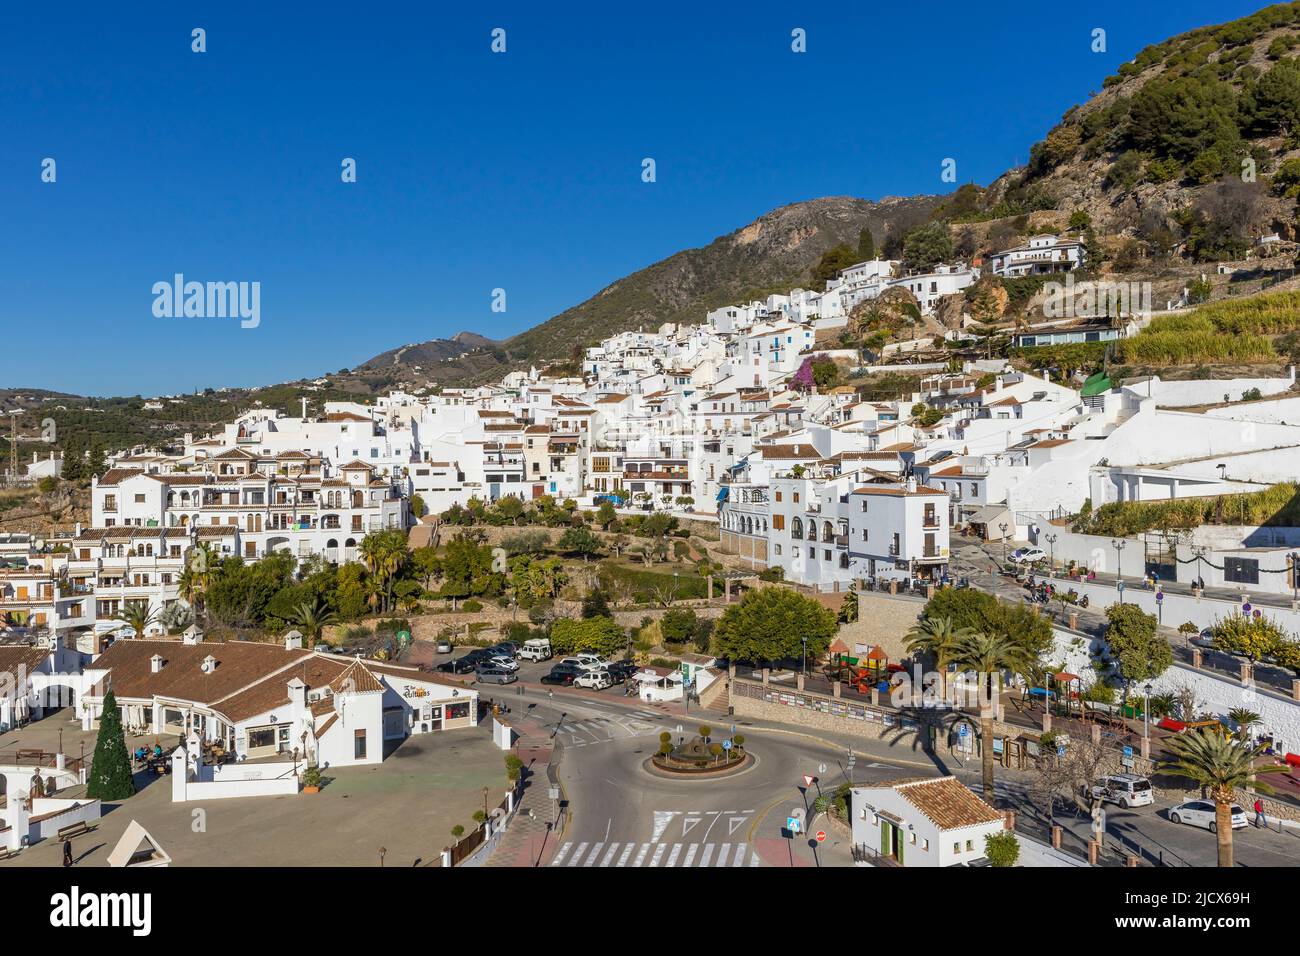 Vista sul centro storico da Casa del Apero, Frigiliana, regione dei monti Axarquia, provincia di Malaga, Andalusia, Spagna, Europa Foto Stock